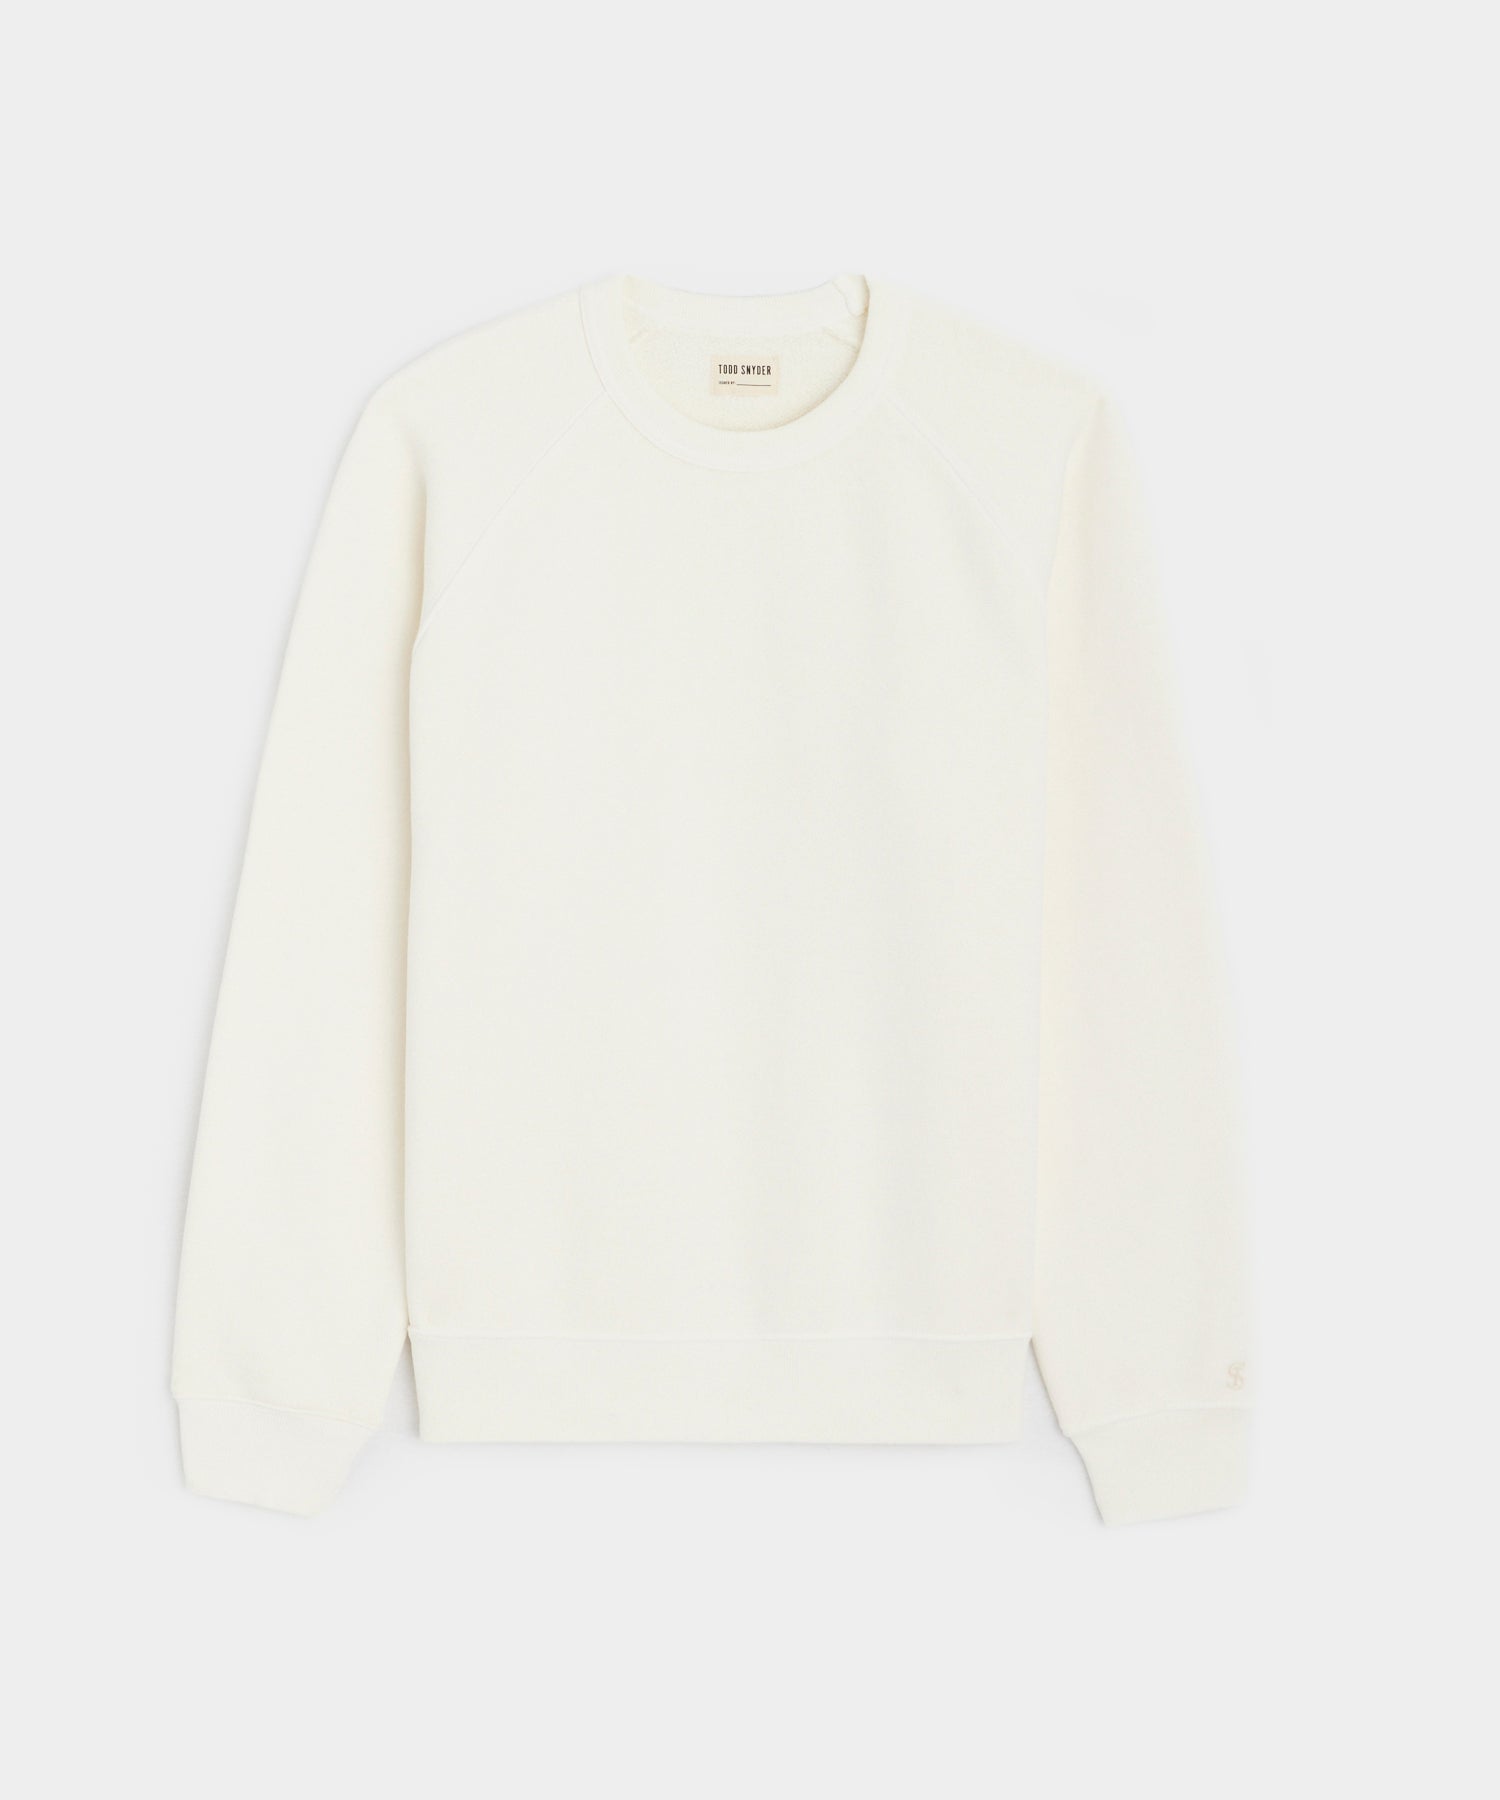 Made in L.A. Fleece Sweatshirt in Coastal White